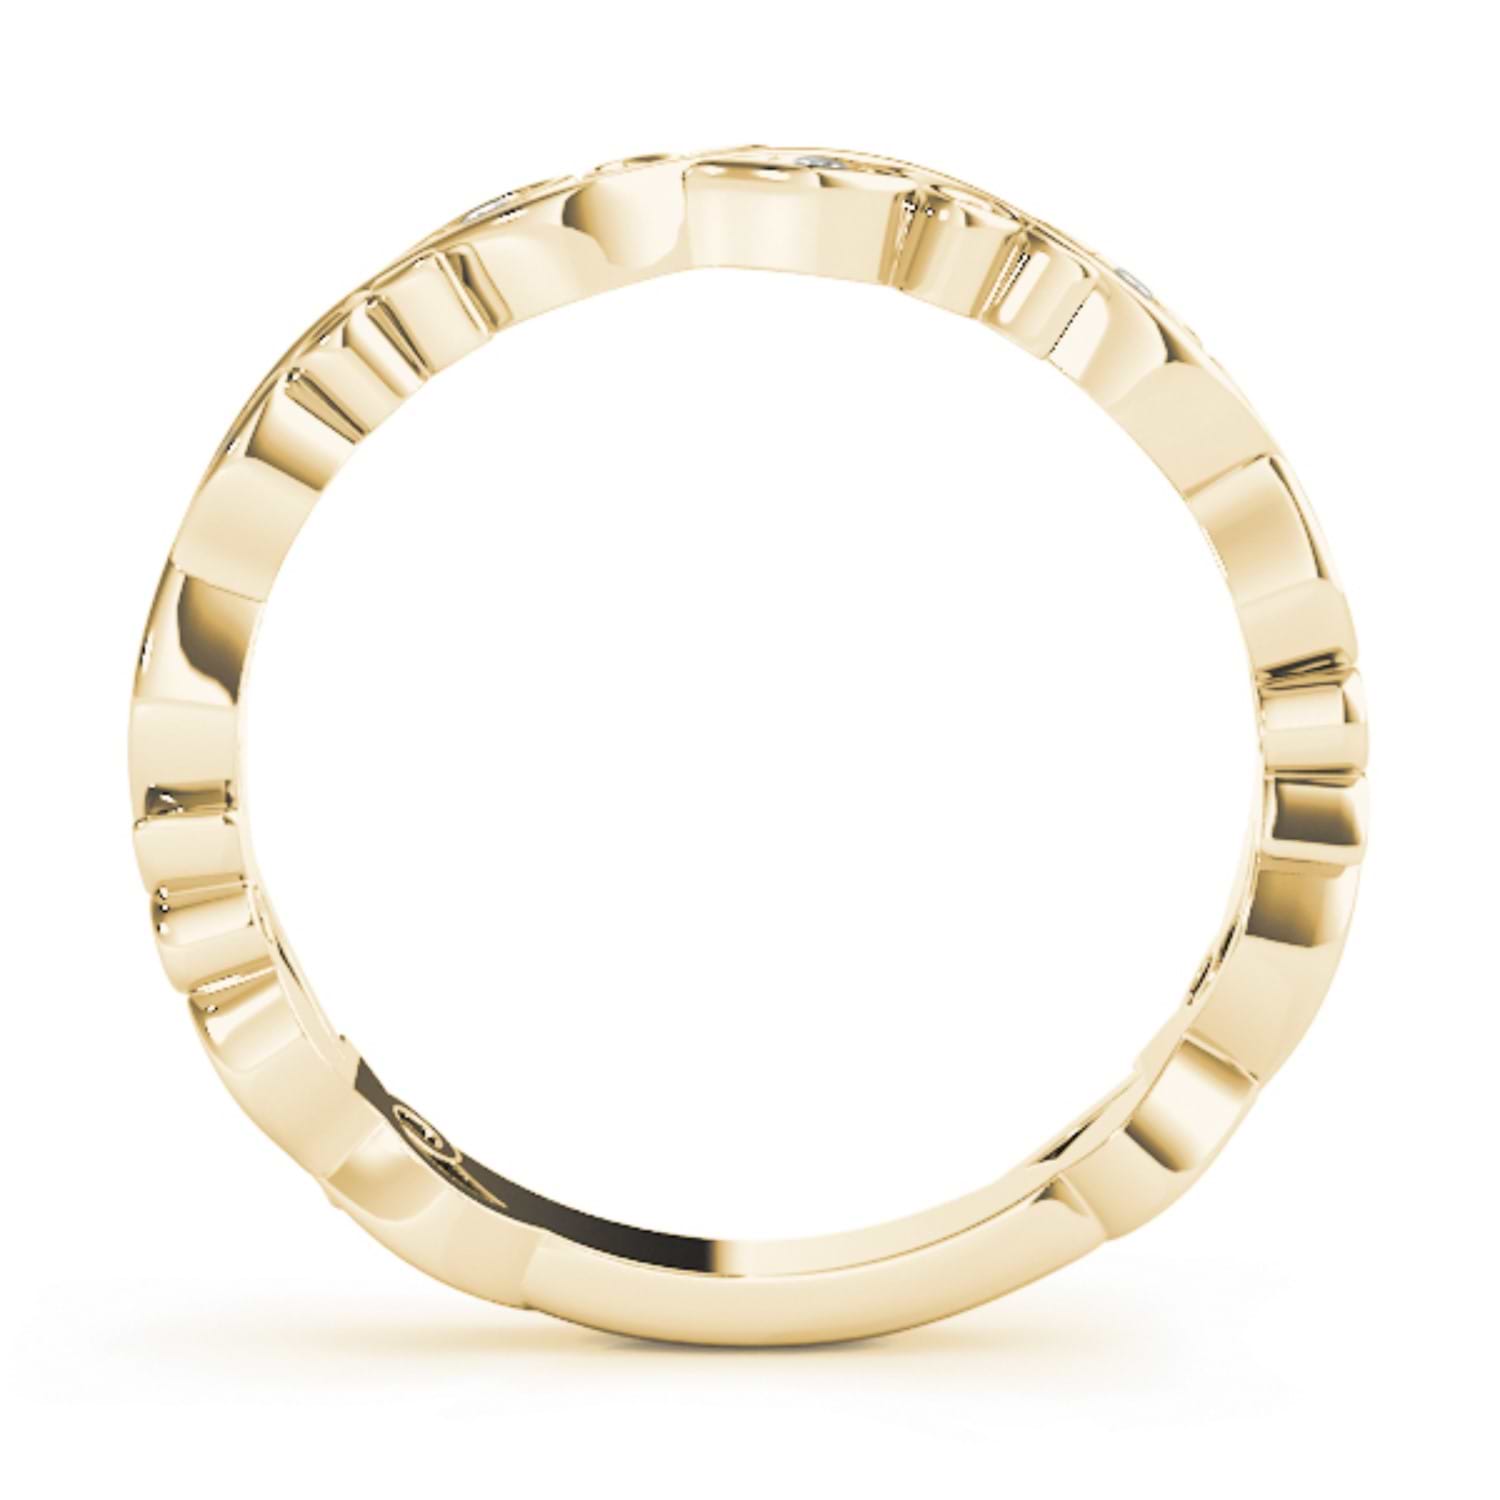 Tanzanite Leaf Fashion Ring Wedding Band 14k Yellow Gold (0.05ct)